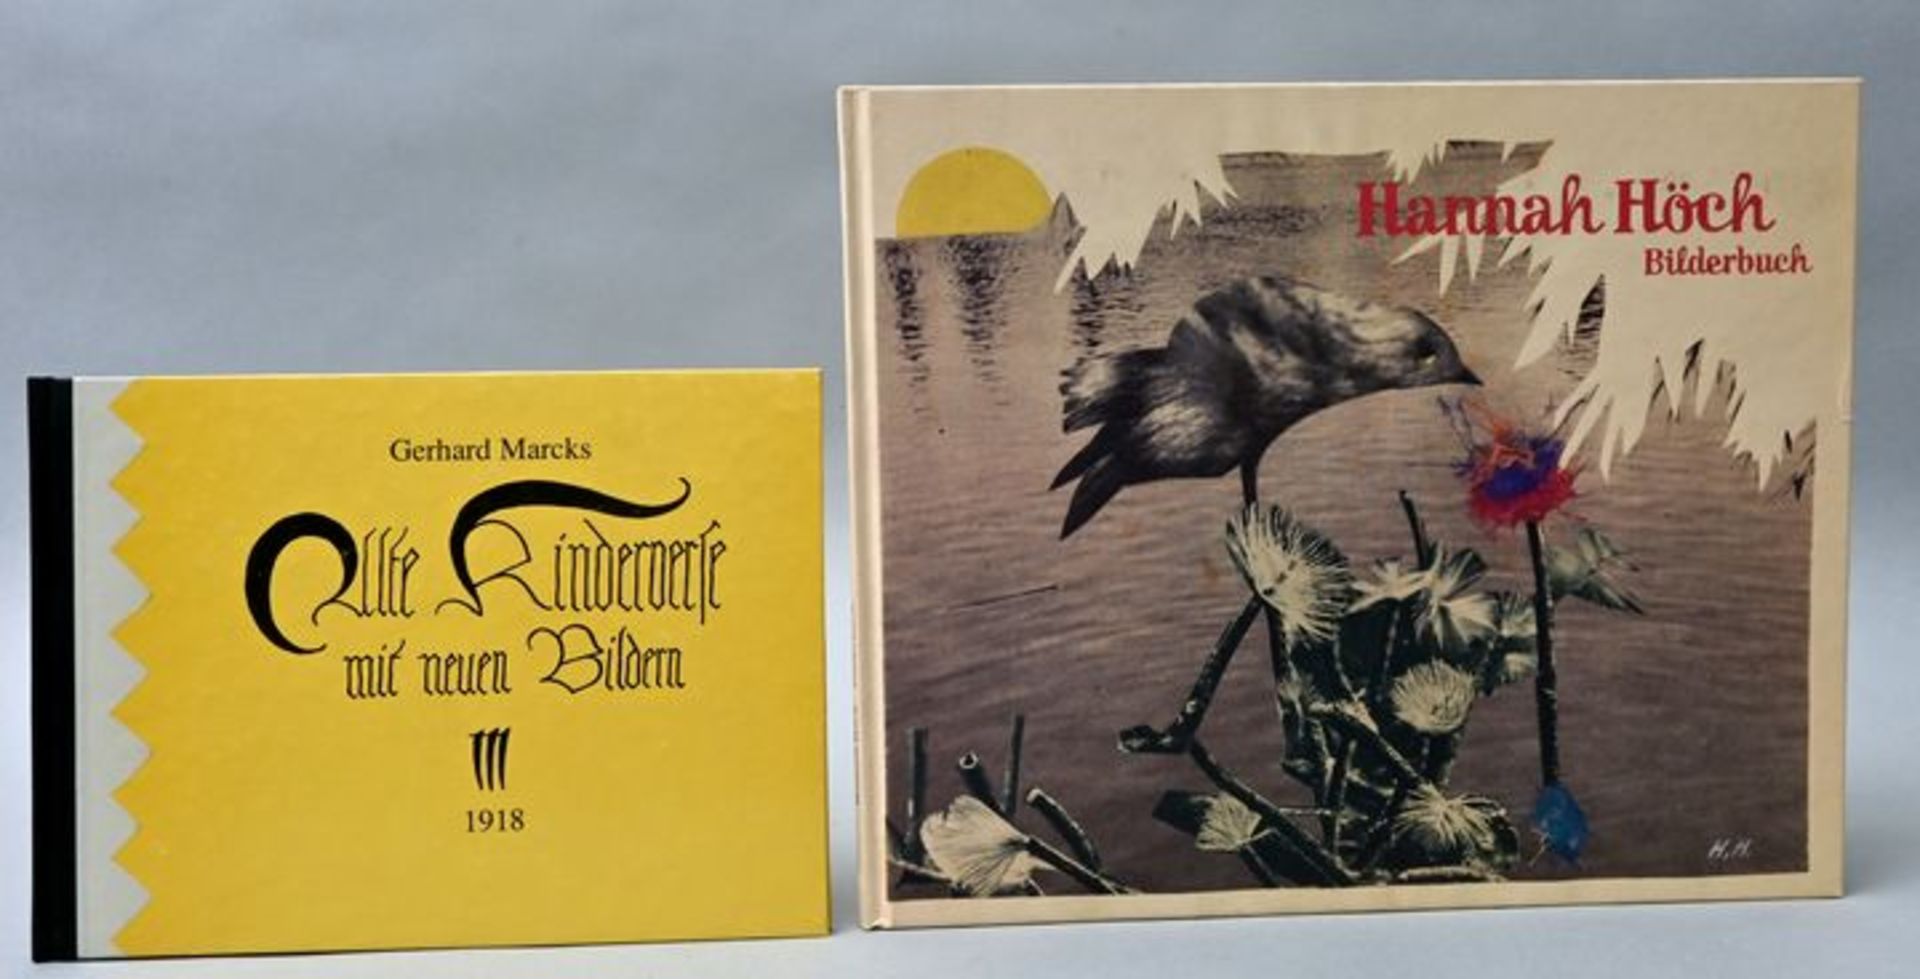 Zwei Künstlerbücher Reprints / Two reprints of artist's books